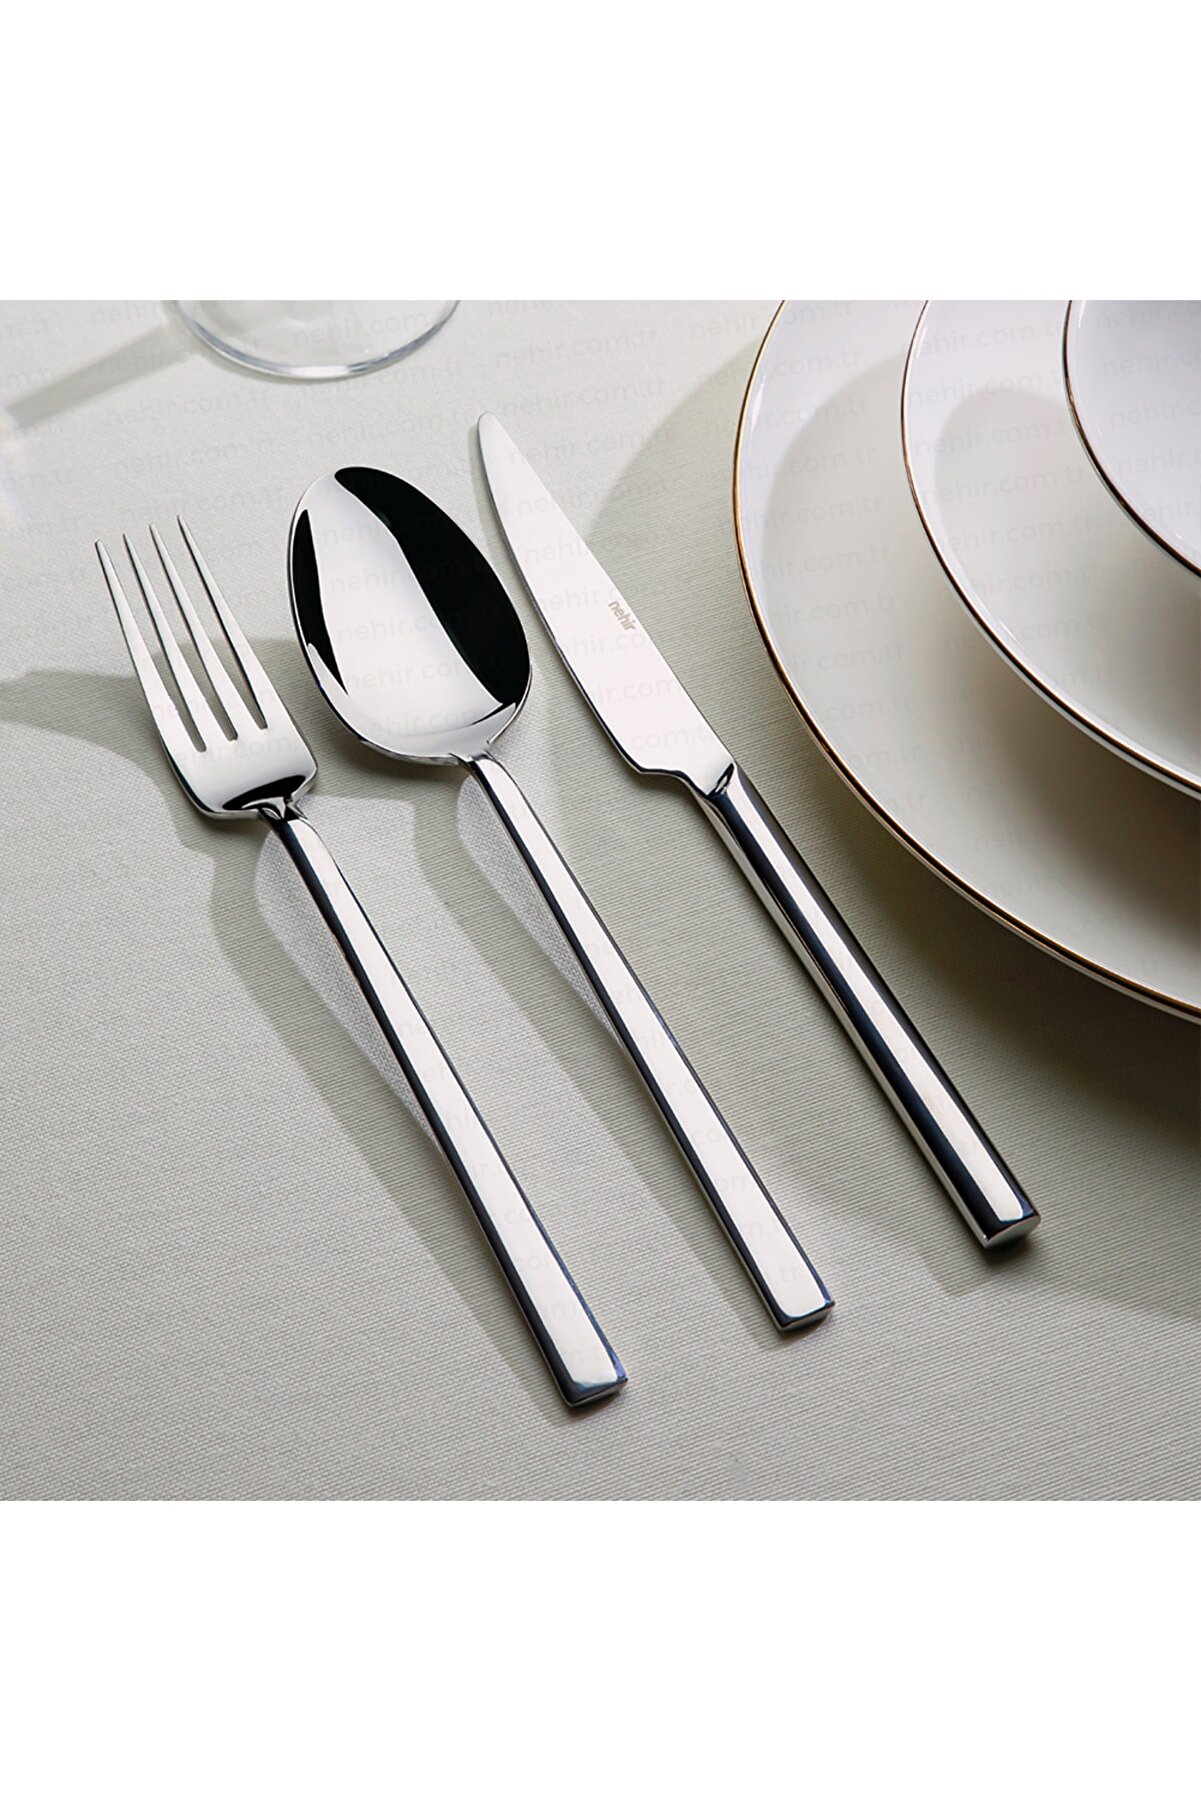 Nehir Dalyan Modeli Sade Günlük Yemek Takım Set 6 Adet Yemek Kaşık, Çatal Ve Bıçak Toplam 18 Parça